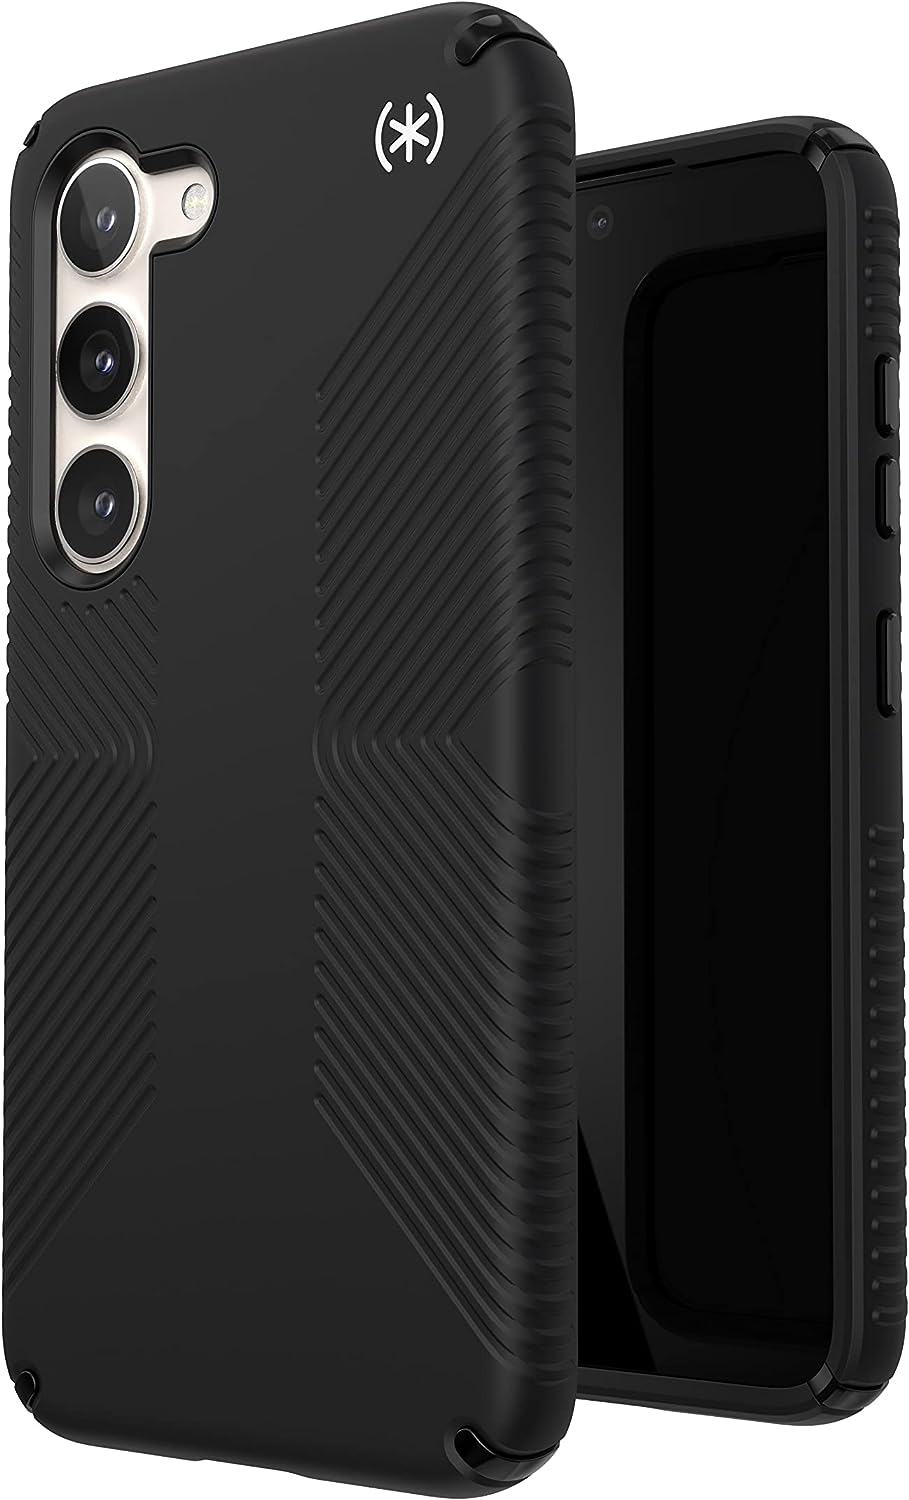 Speck Presidio 2 Grip Samsung Galaxy S23 Case Slim Design Drop Protection - Black